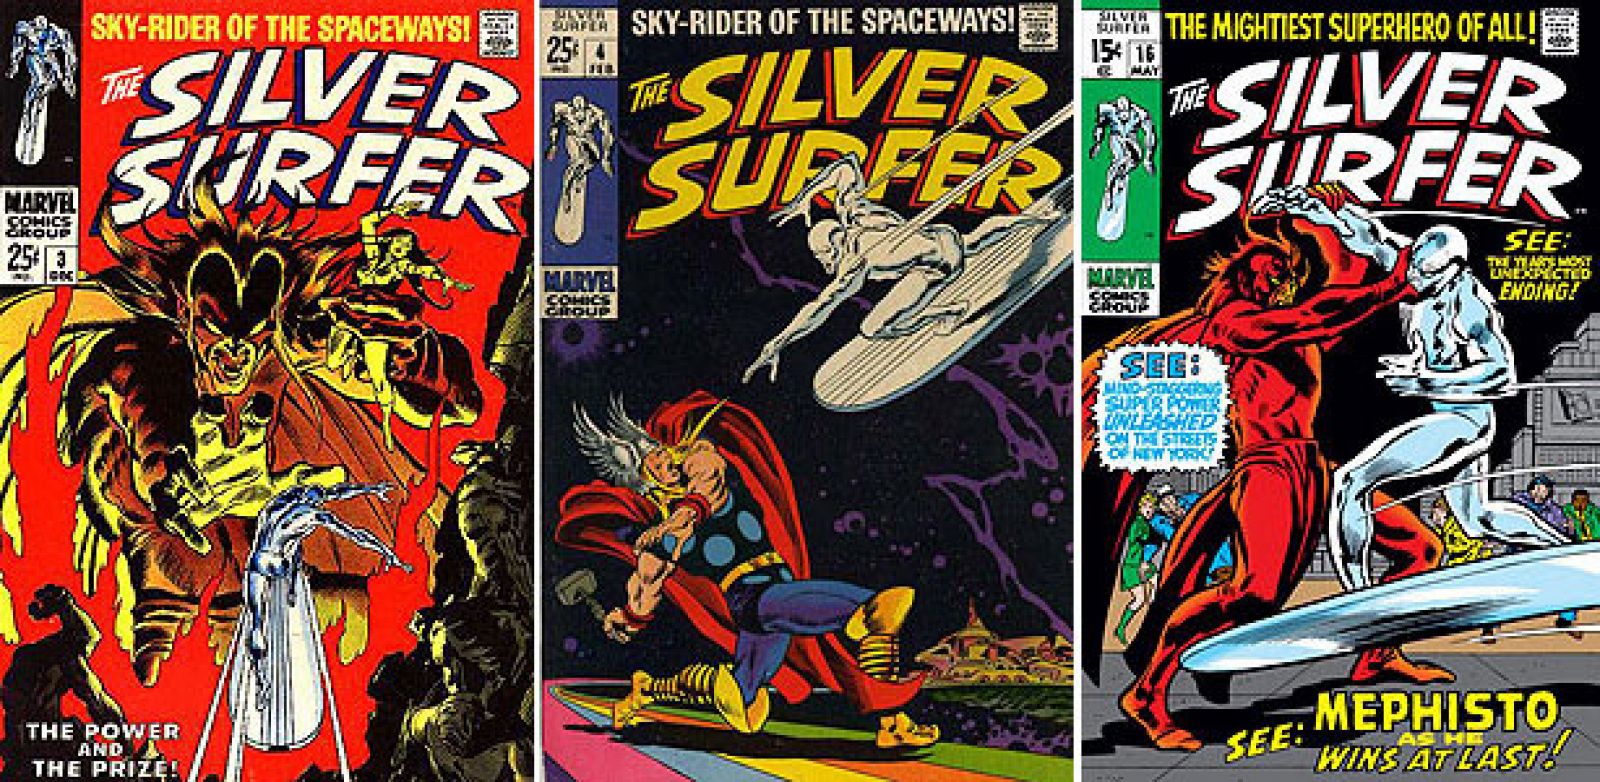 Tres de las míticas portadas de John Buscema para la serie de Silver Surfer de Marvel Comics, que ahora reedita Panini.